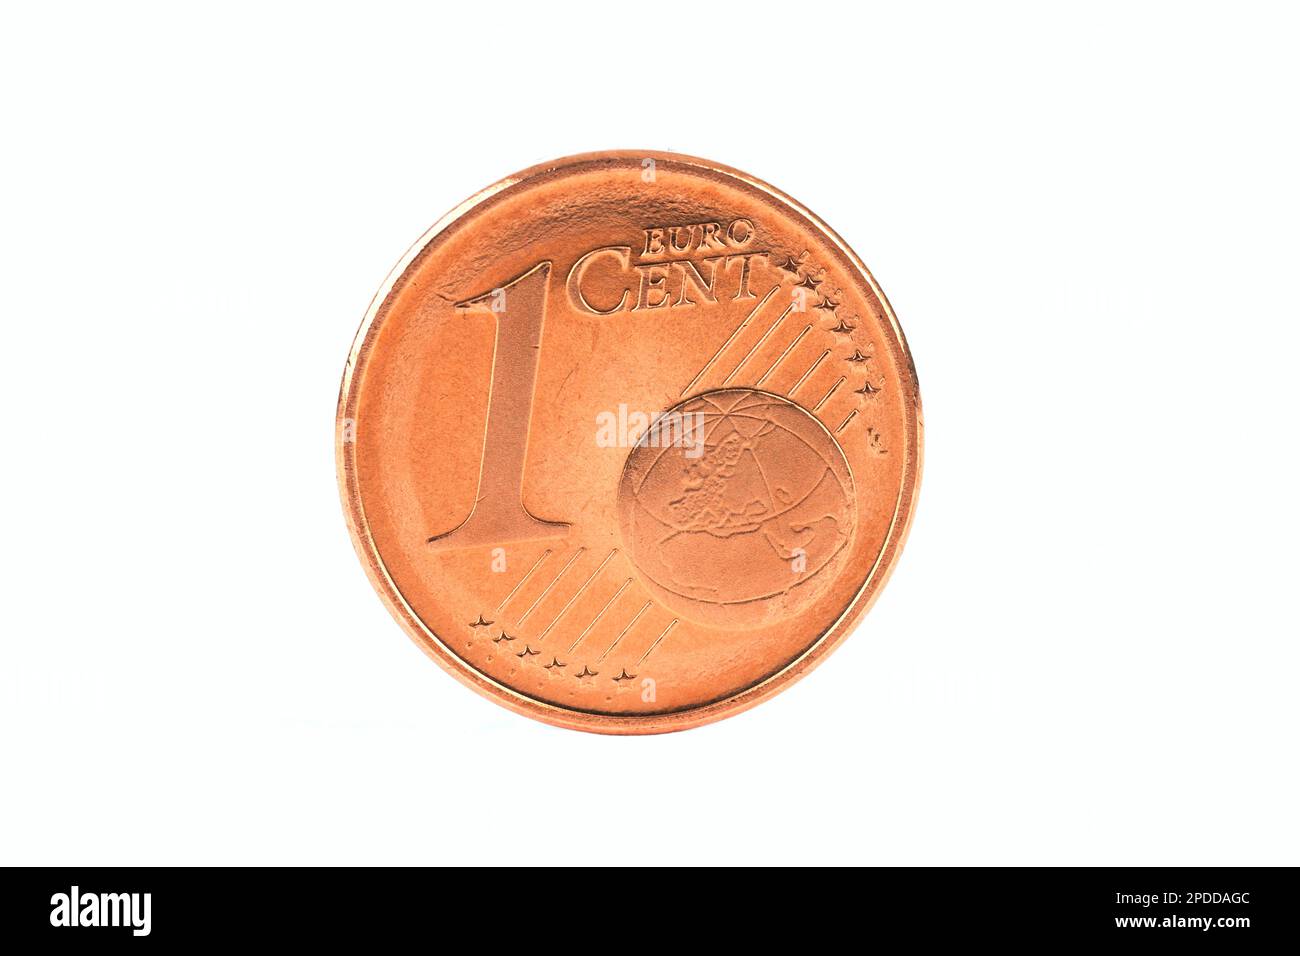 1 Euro Cent coin, cutout Stock Photo